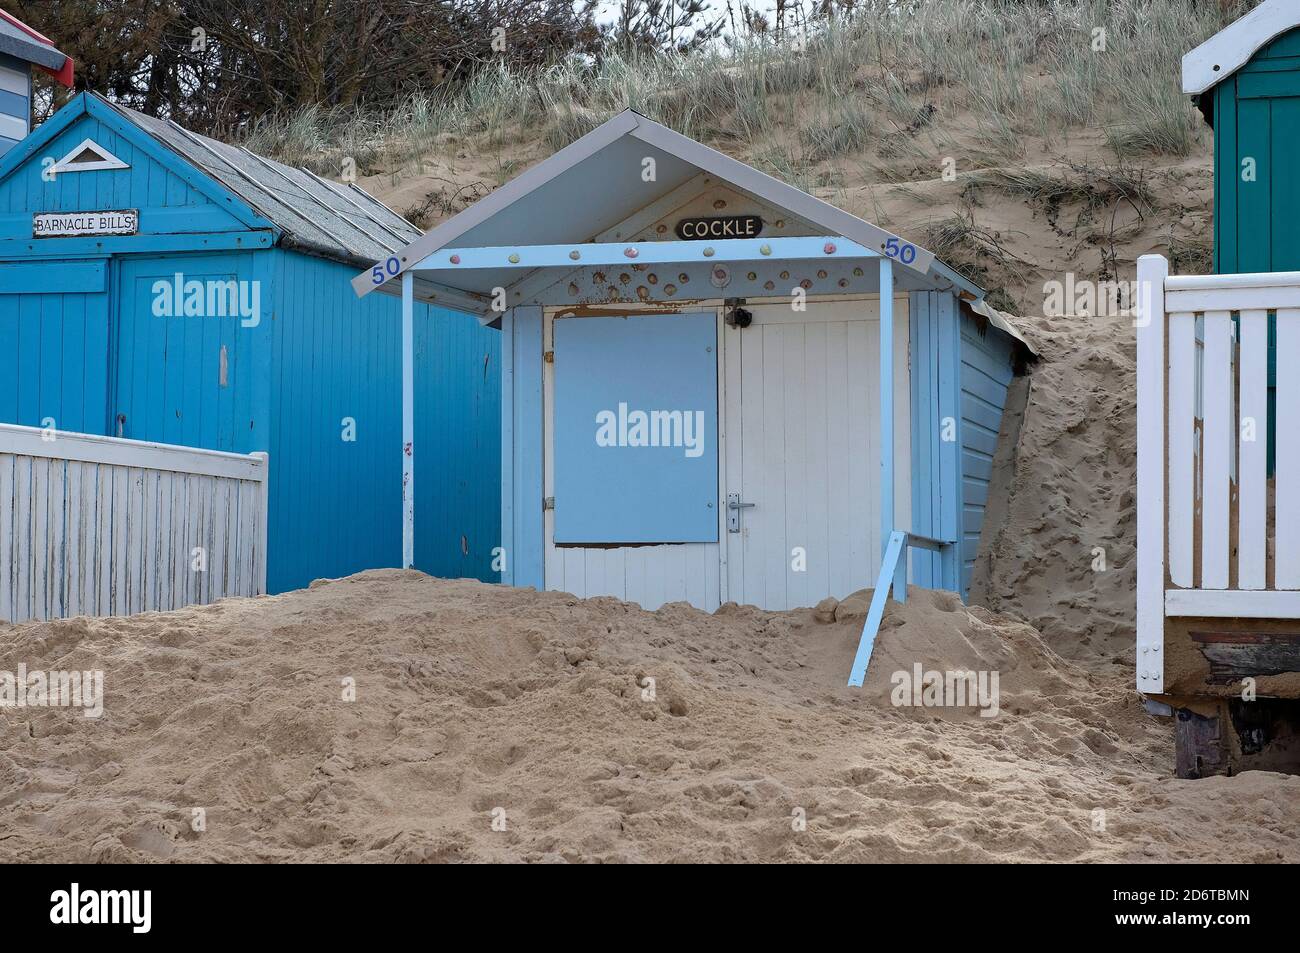 dérive du sable autour des huttes de plage, puits-à-côté-de-la-mer, nord de norfolk, angleterre Banque D'Images